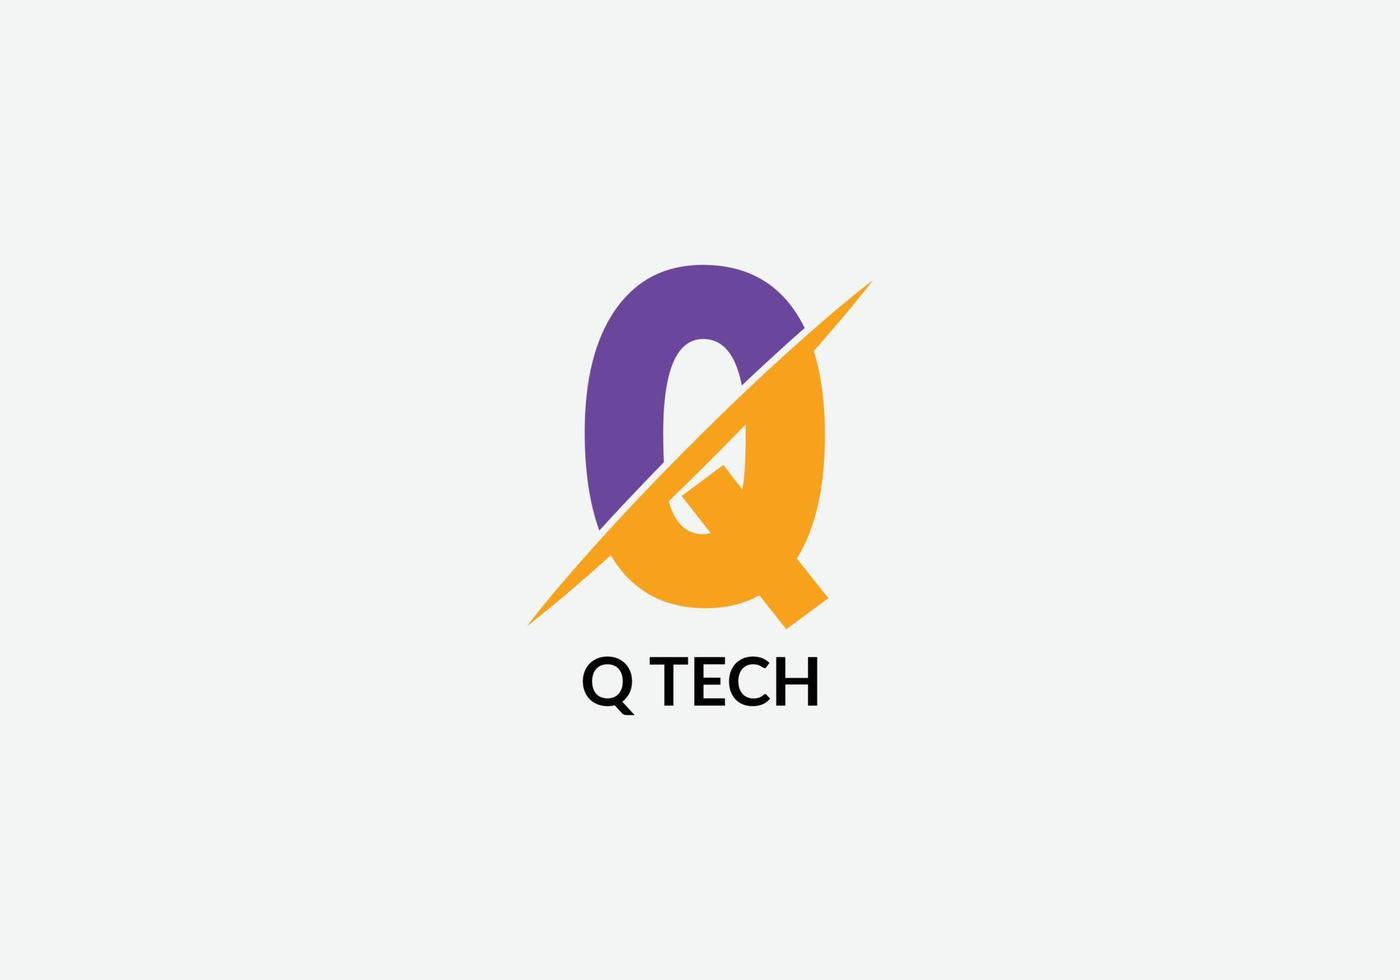 Q Tech Abstract Q initial modern letter logo design vector